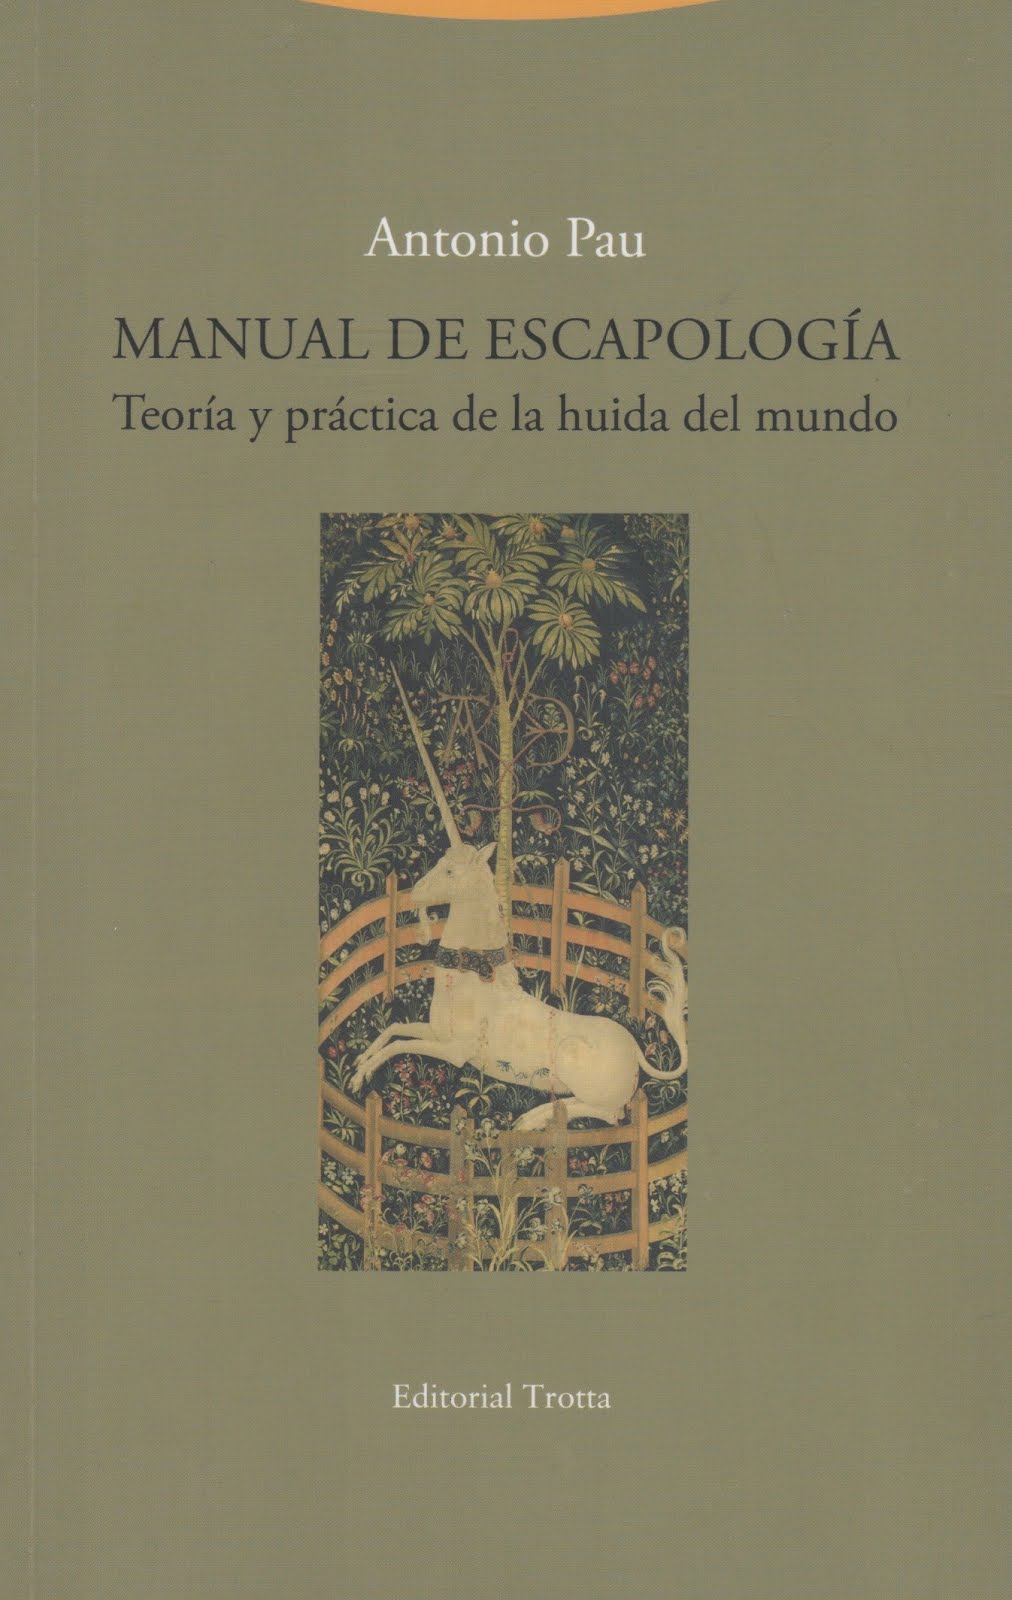 Antonio Pau (Manual de escapología) Teoría y practica de la huida del mundo